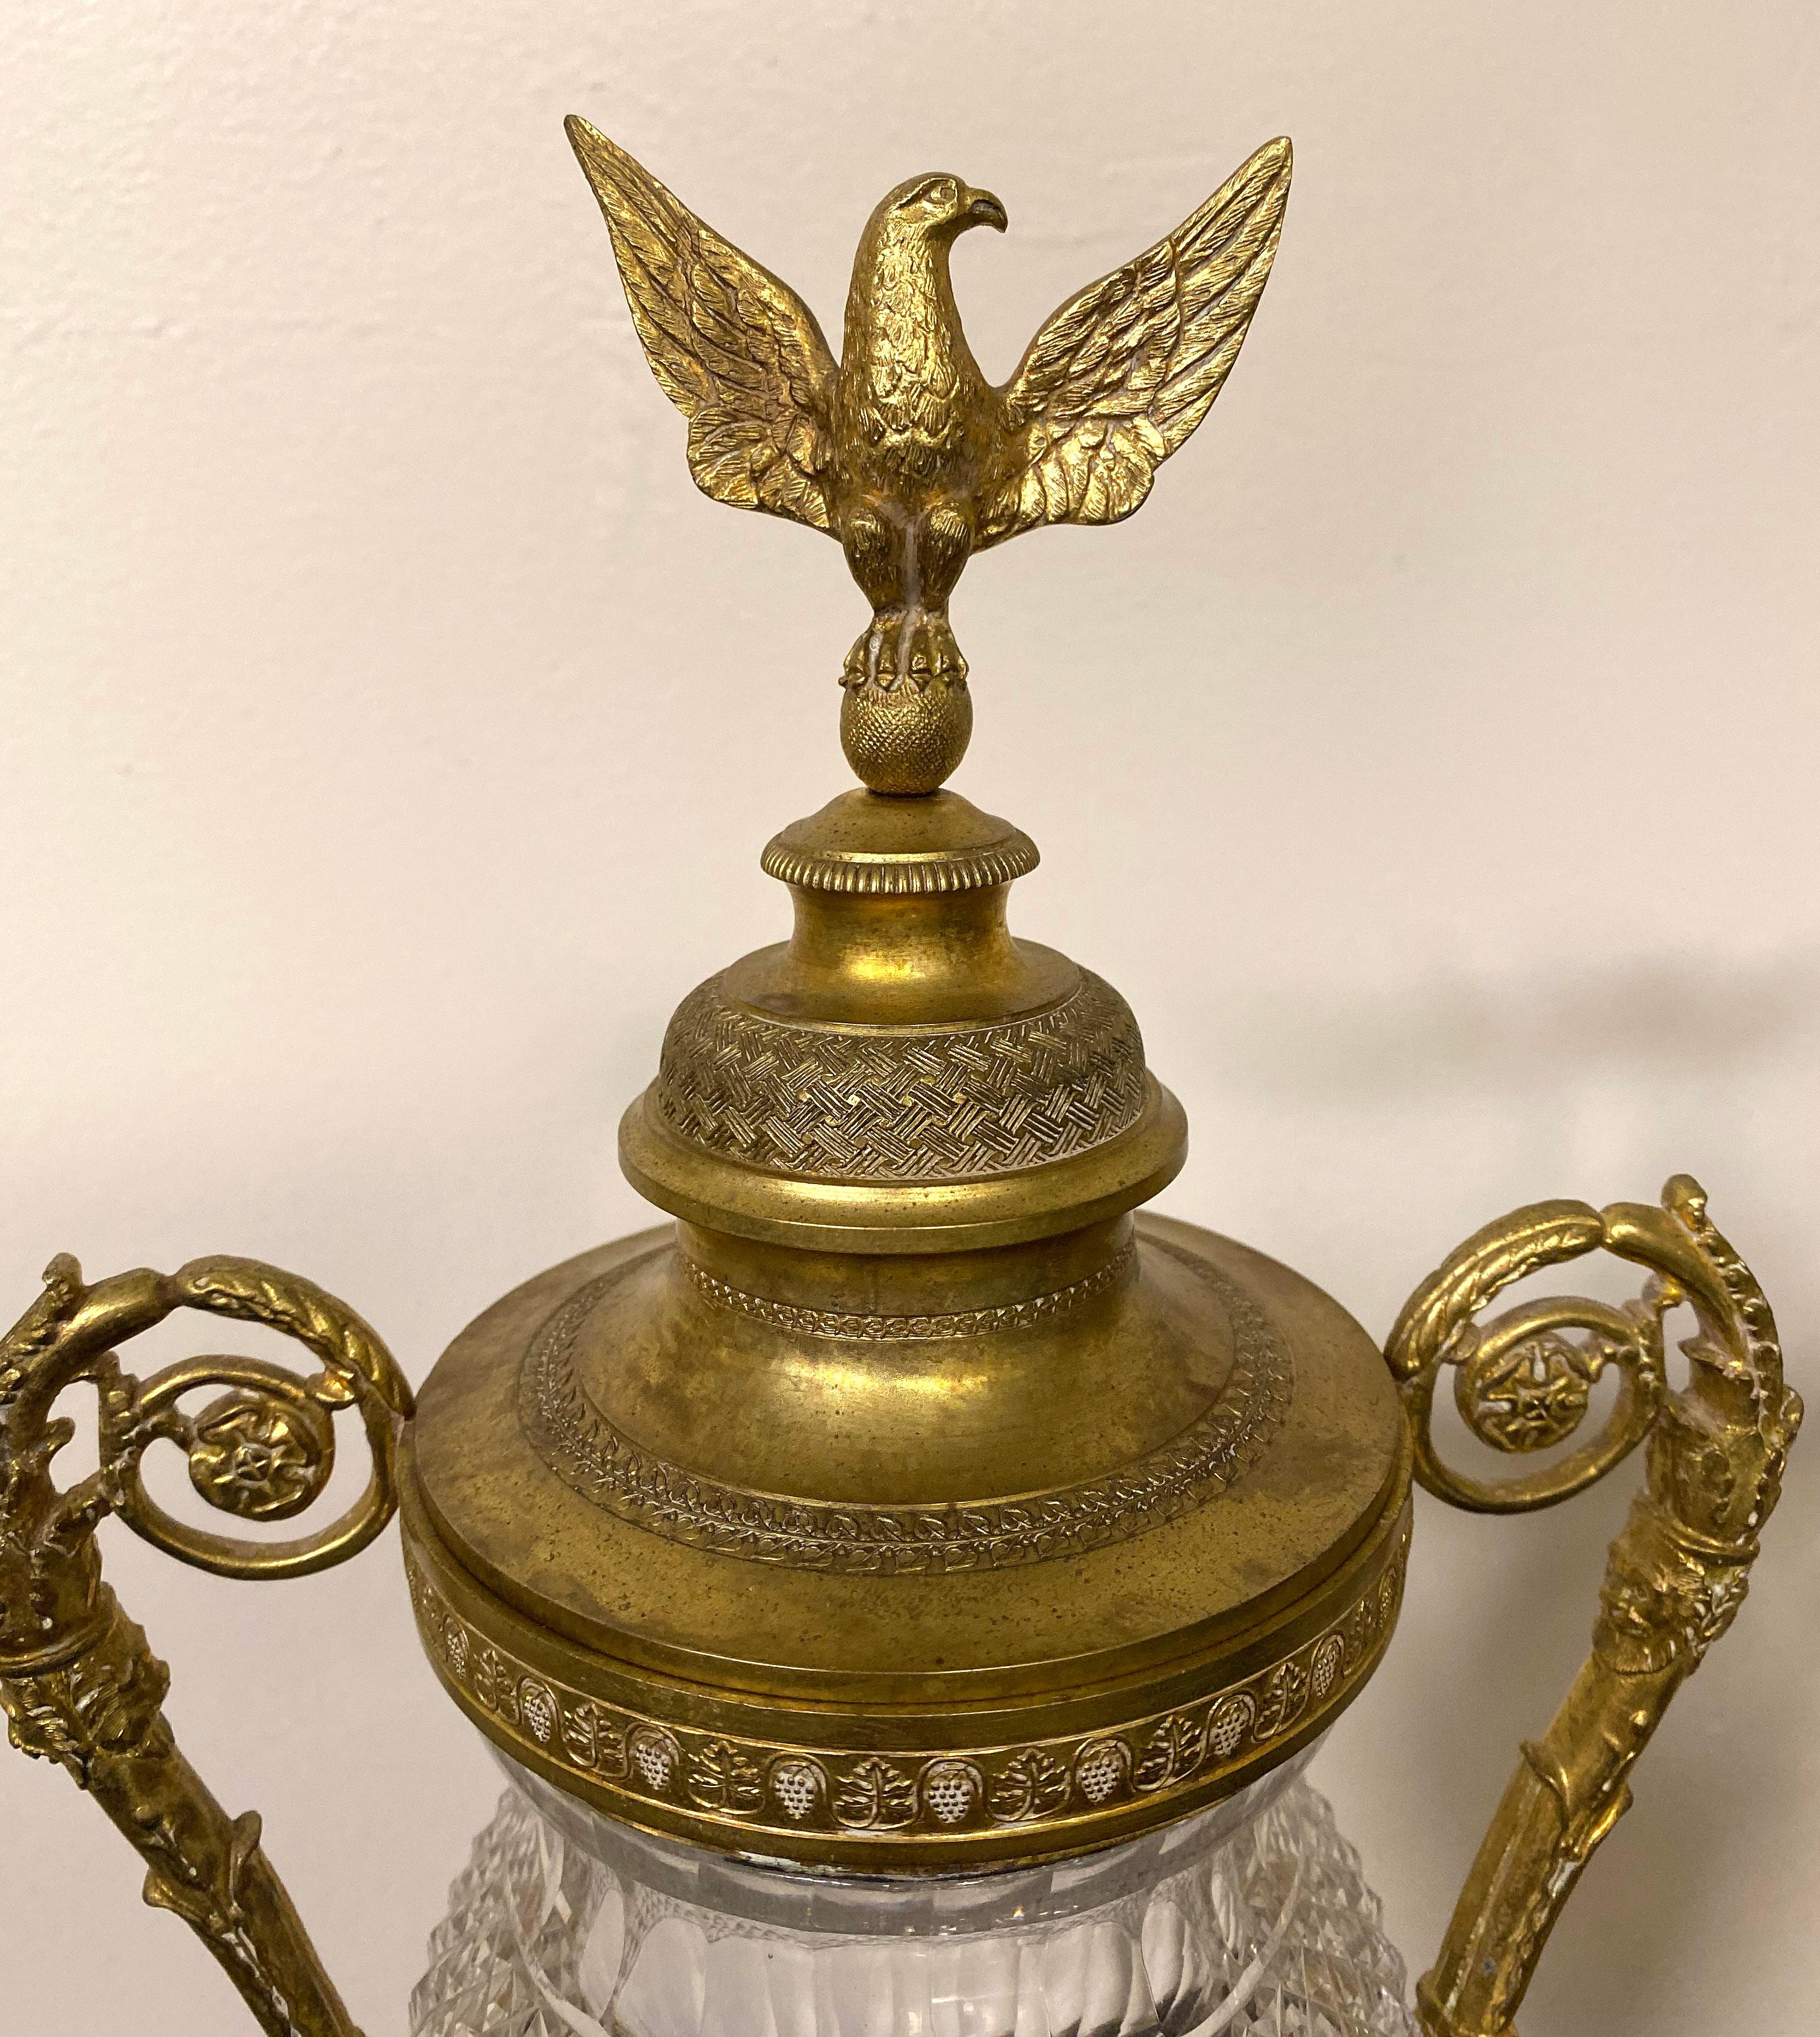 Belle paire de vases de style Empire en bronze doré et cristal taillé de la fin du 19e siècle

Corps en cristal finement taillé avec des bras en bronze de chaque côté, les couvercles en bronze représentant des aigles aux ailes déployées, reposant